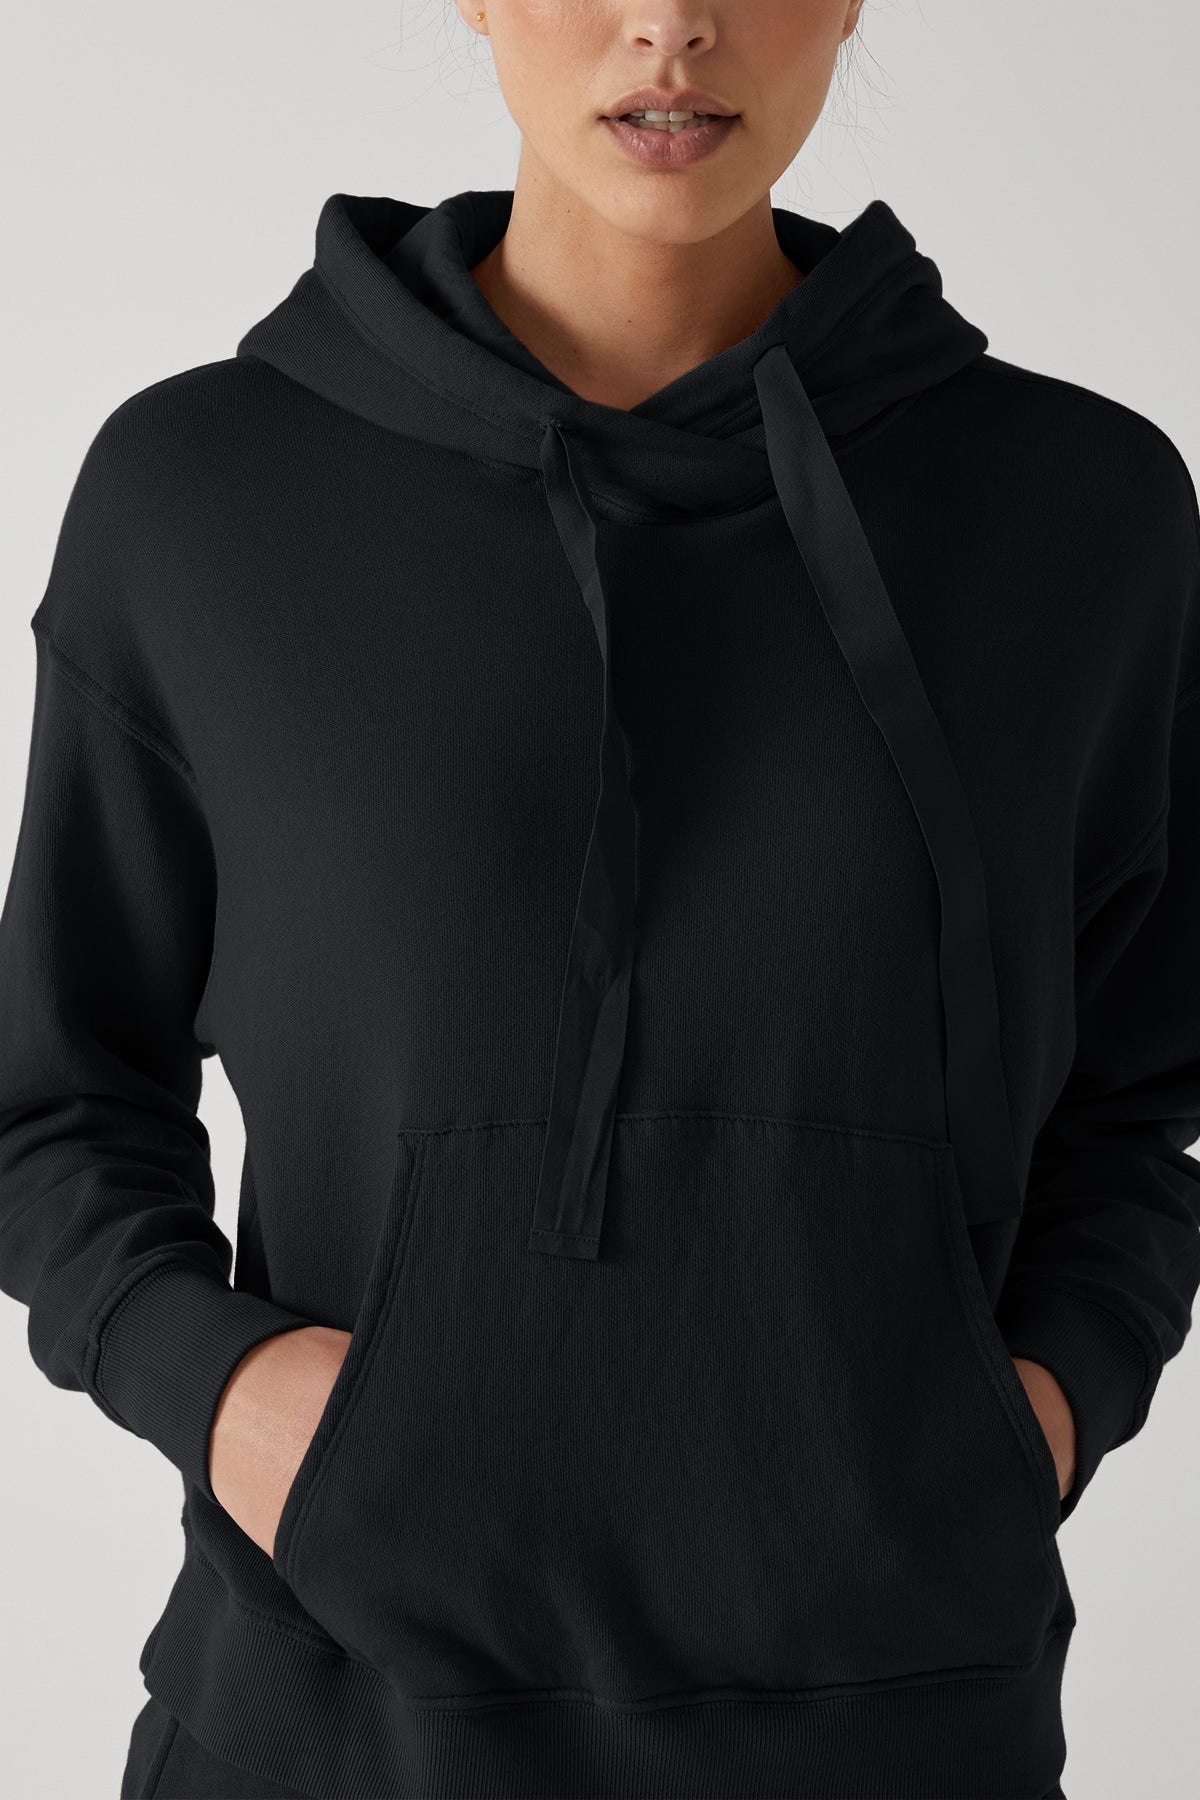   ojai hoodie front detail black 